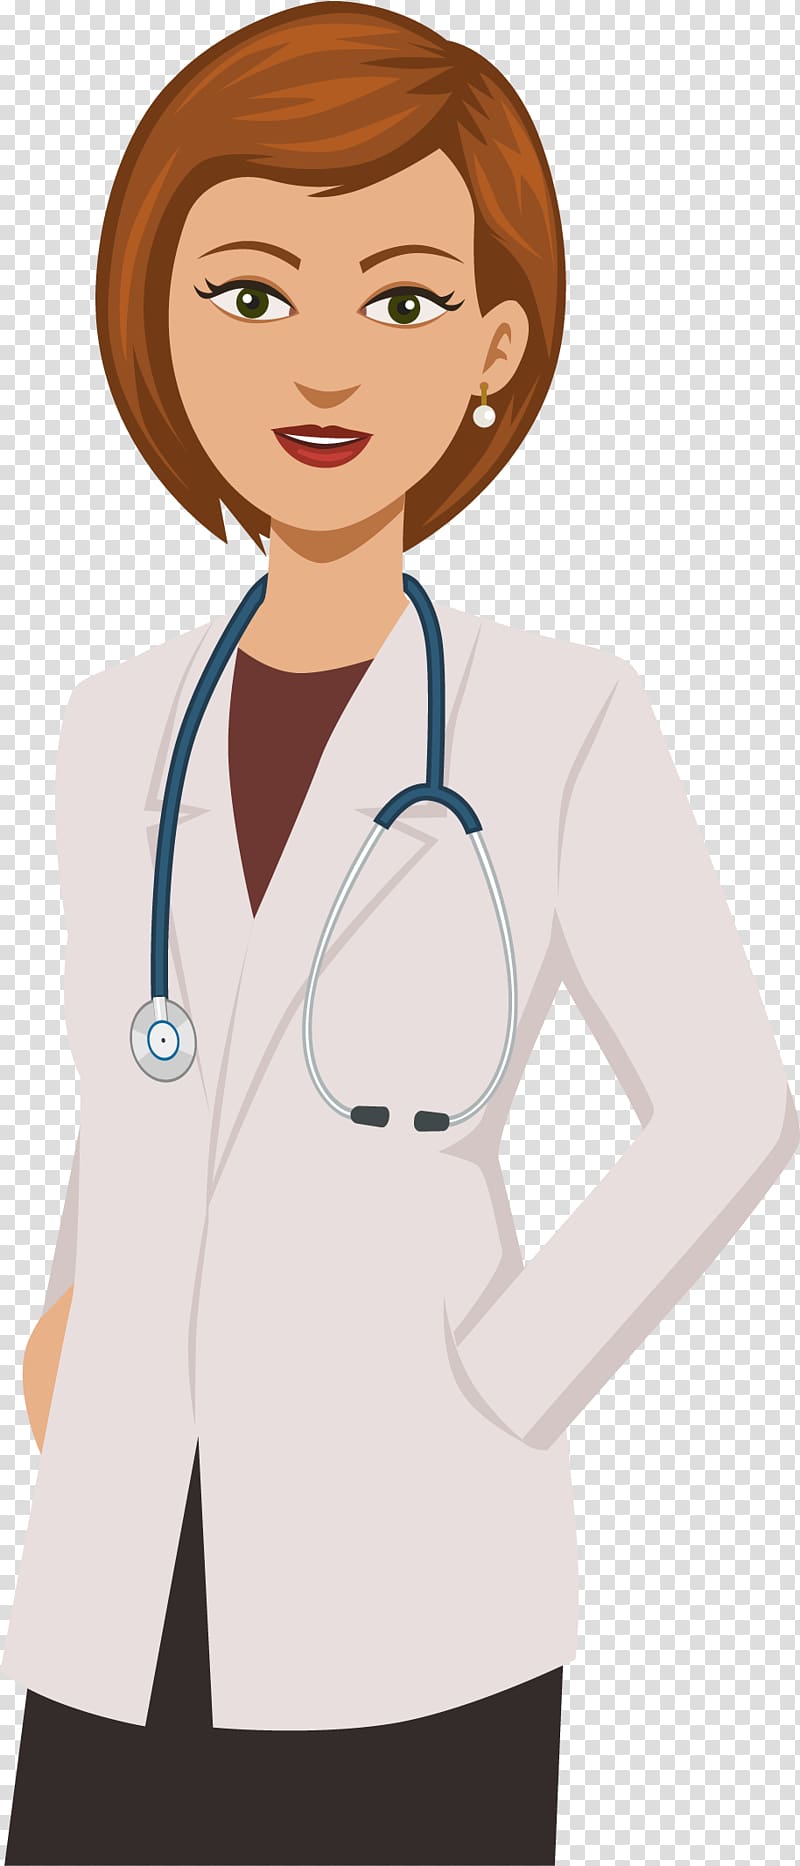 Médico, Hospital, Doentes E Etc - Doctor Clipart Girl - 488x1024 Png 81A